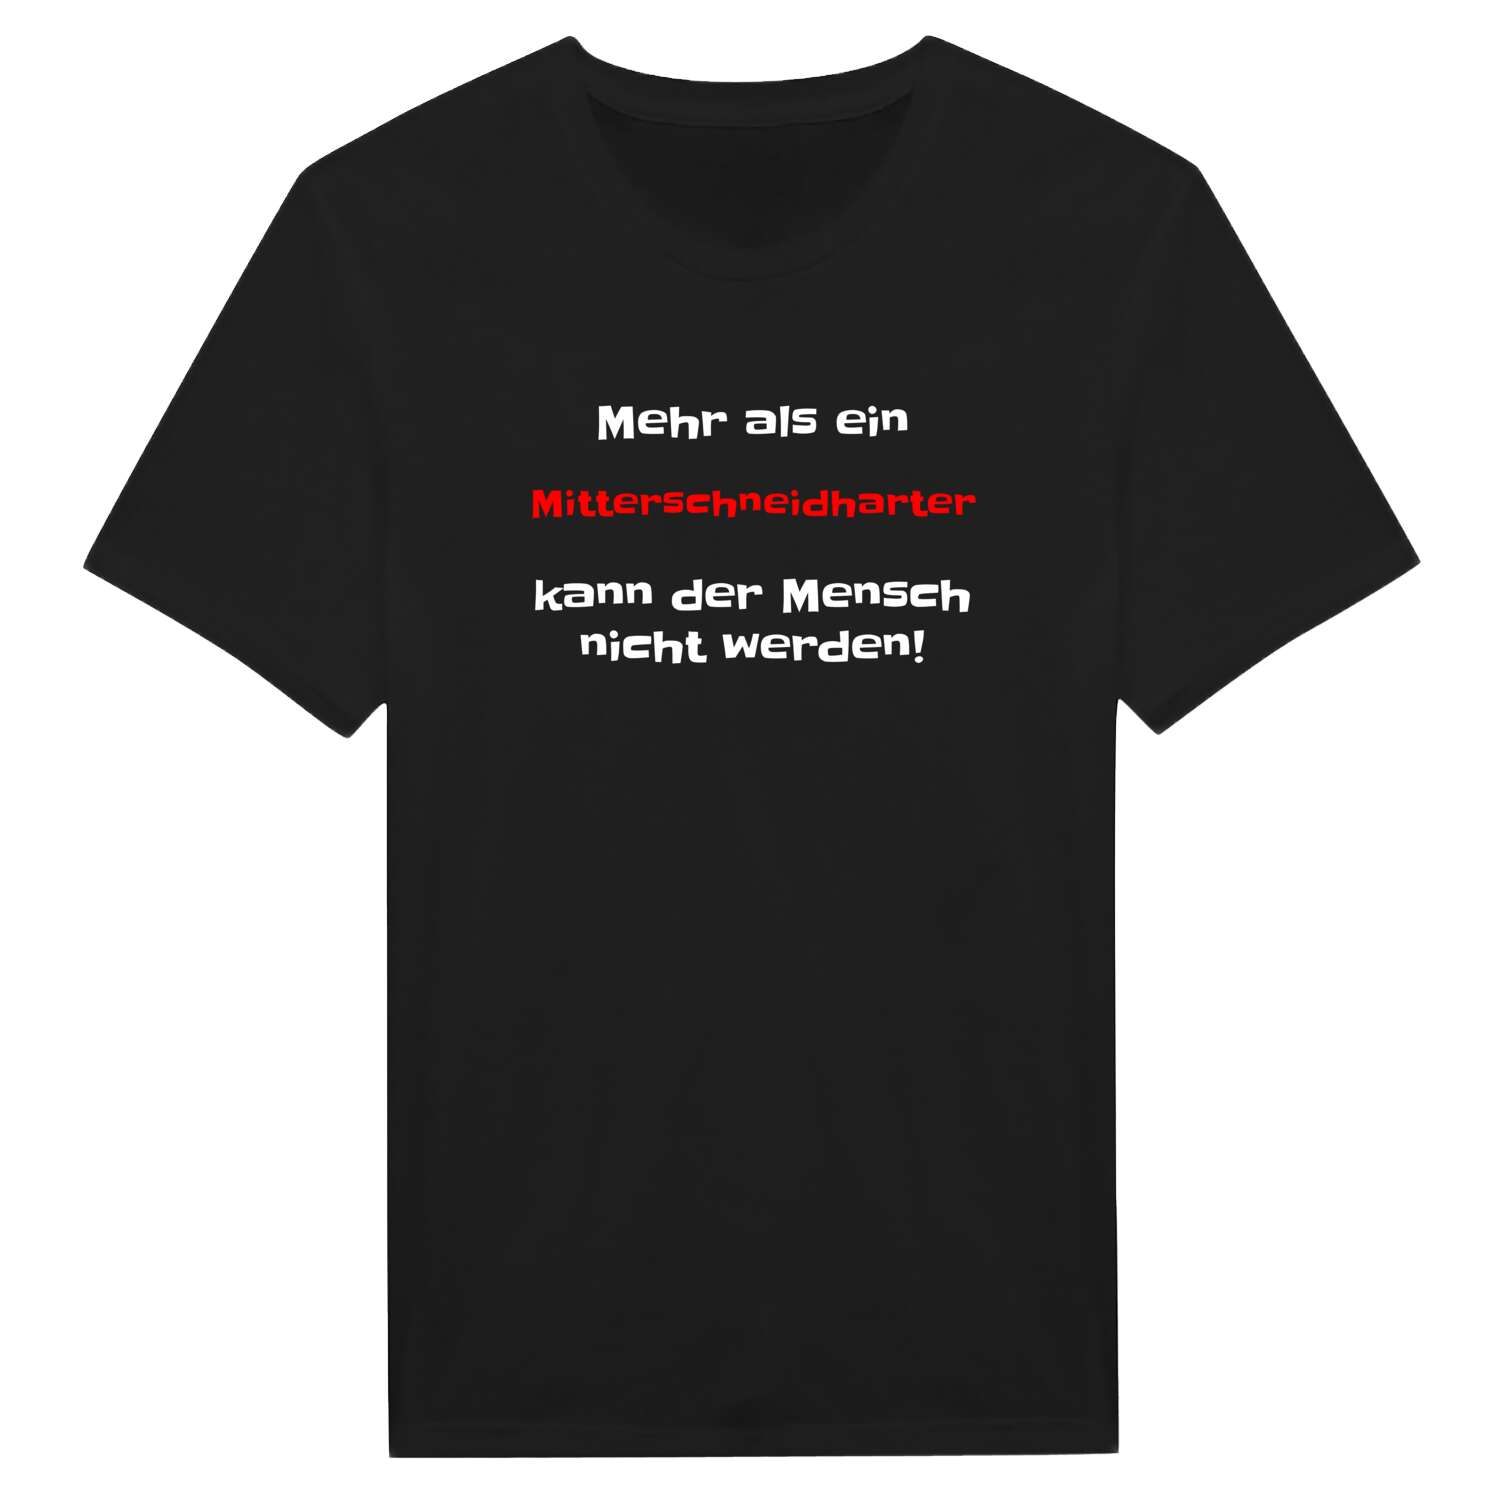 Mitterschneidhart T-Shirt »Mehr als ein«